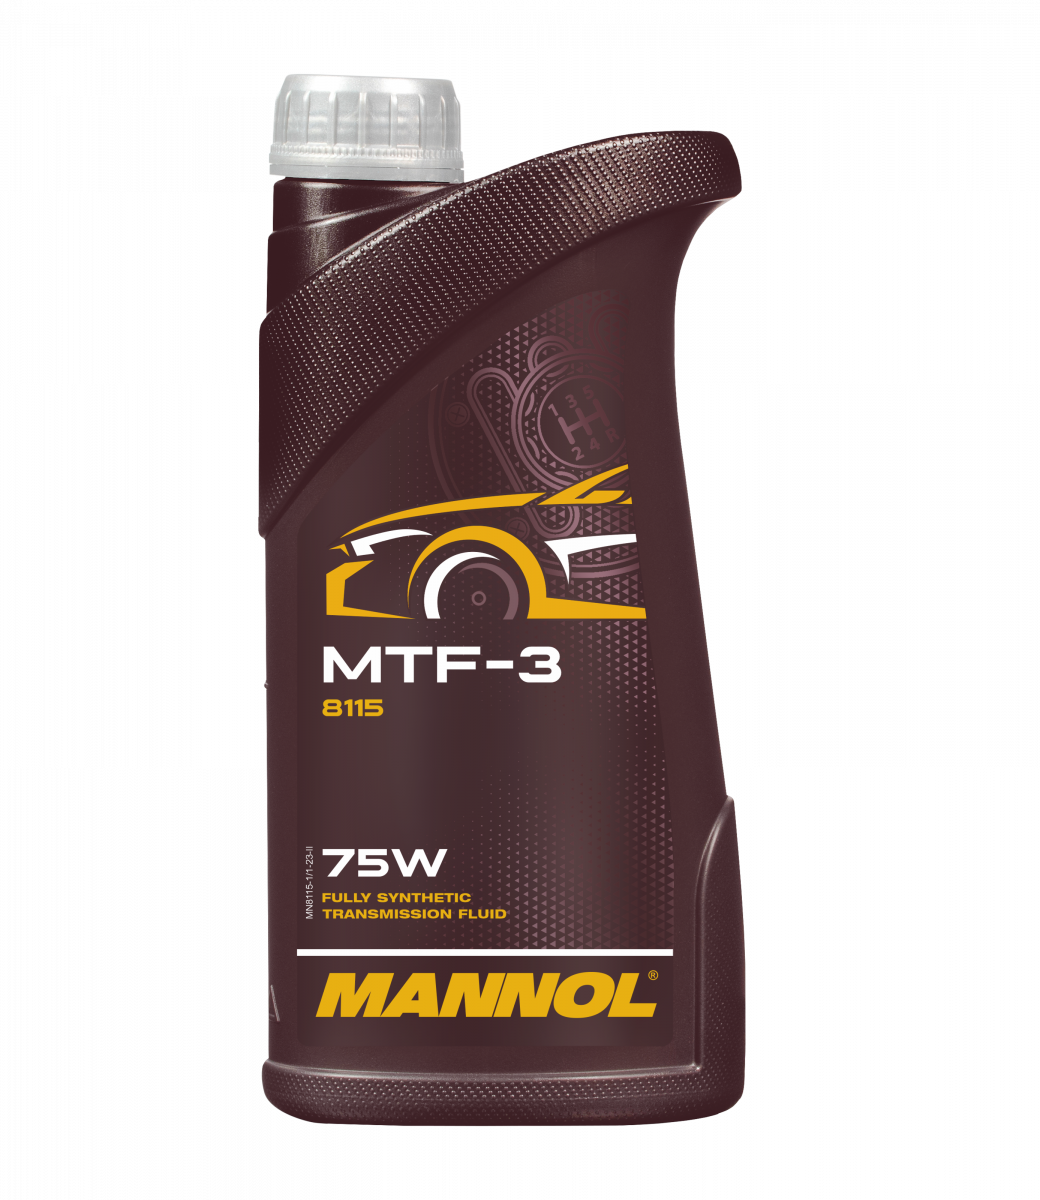 MANNOL MTF-3 75w GL-4 8115 1л трансмиссионное масло